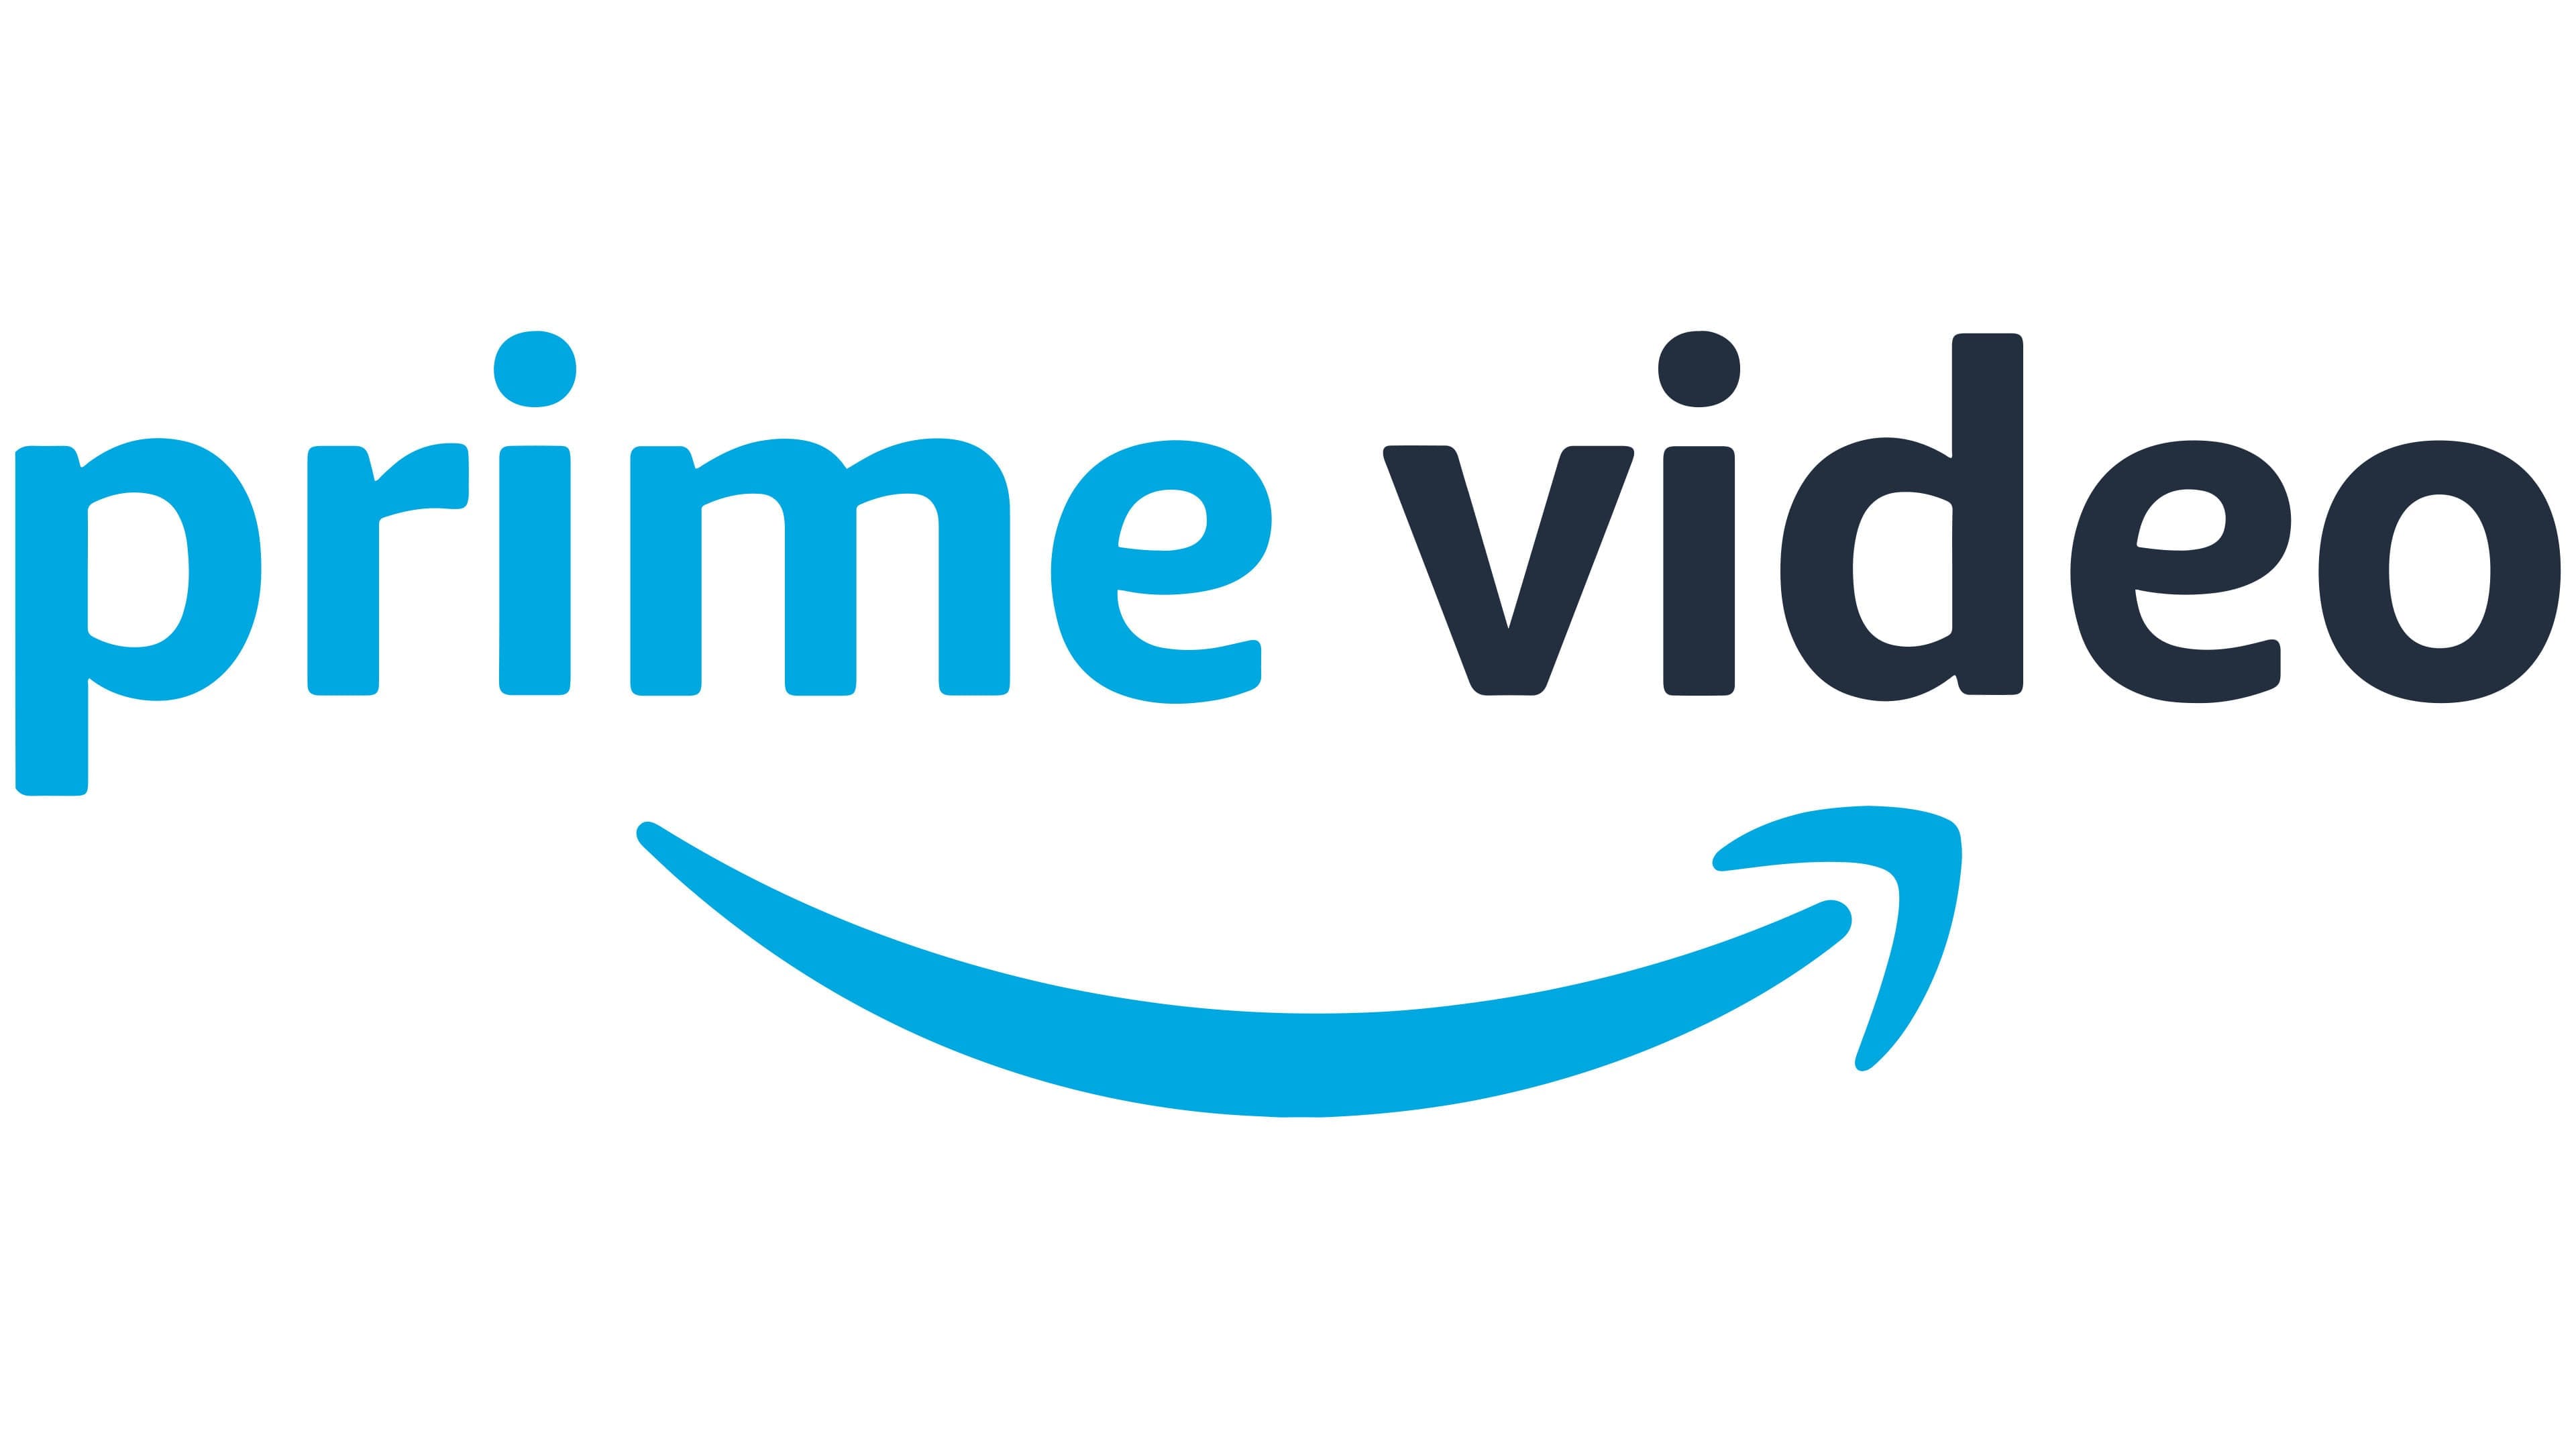 Amazon Prime logo